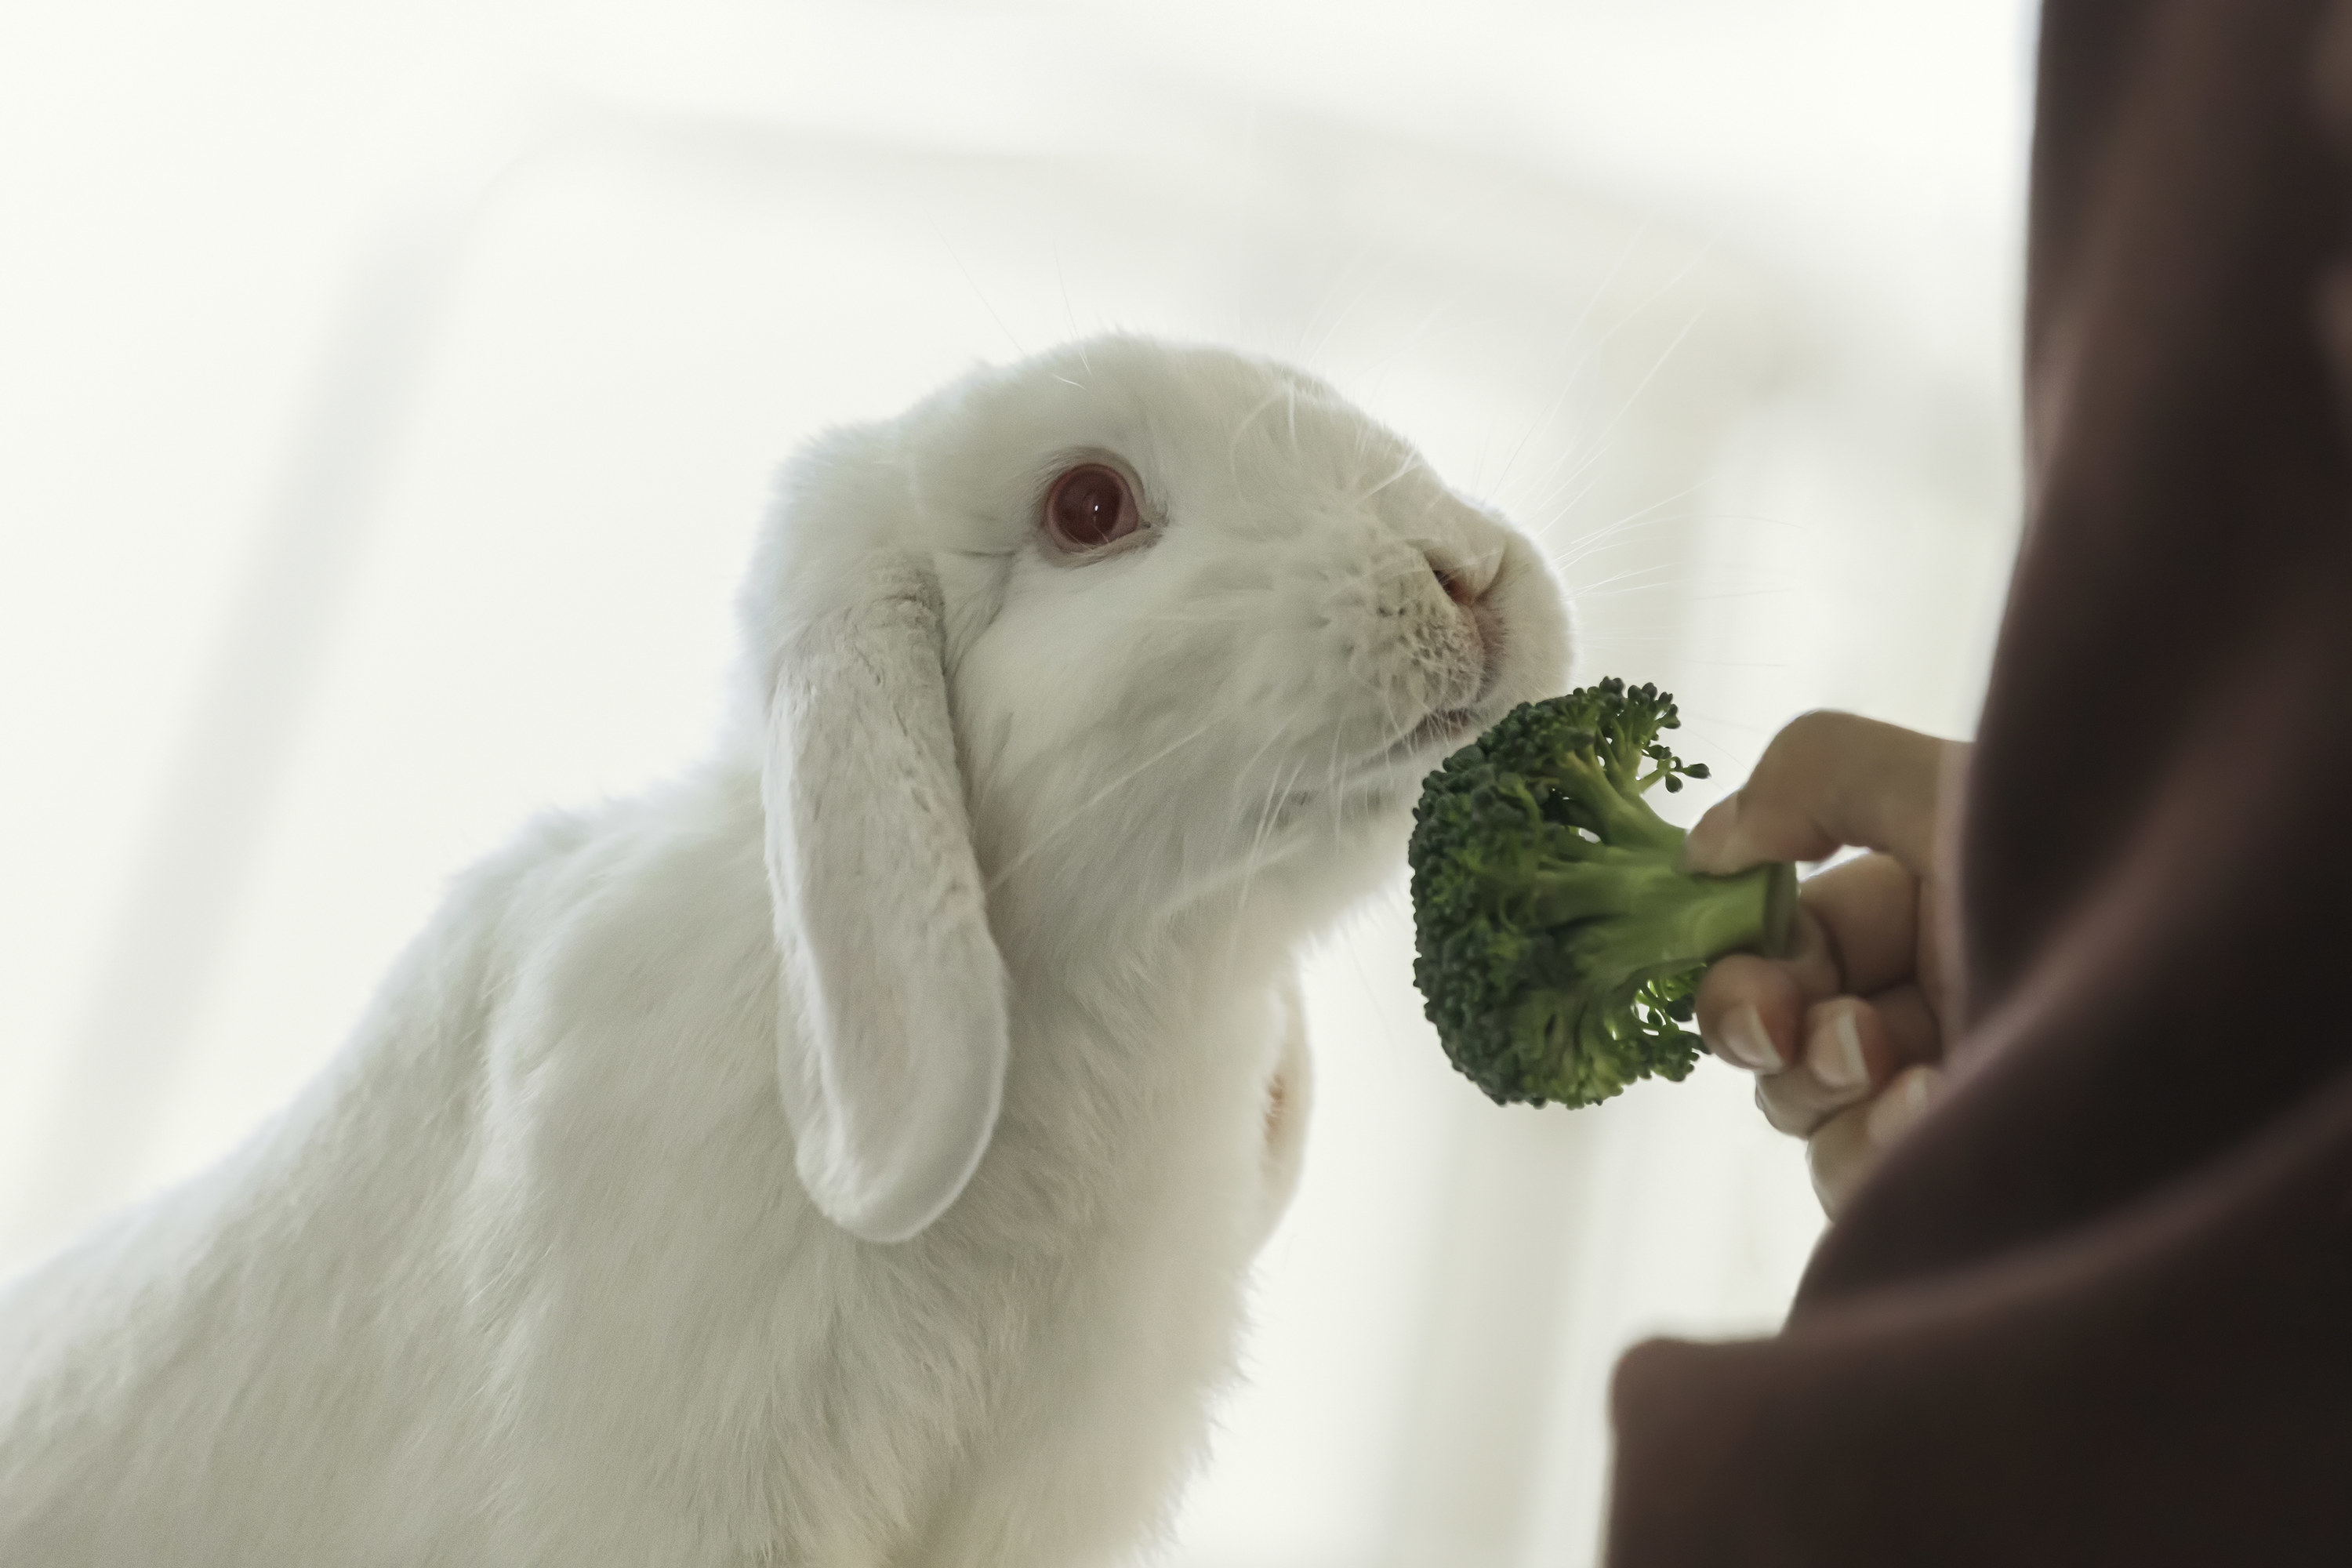 Person feeding broccoli to their pet rabbit